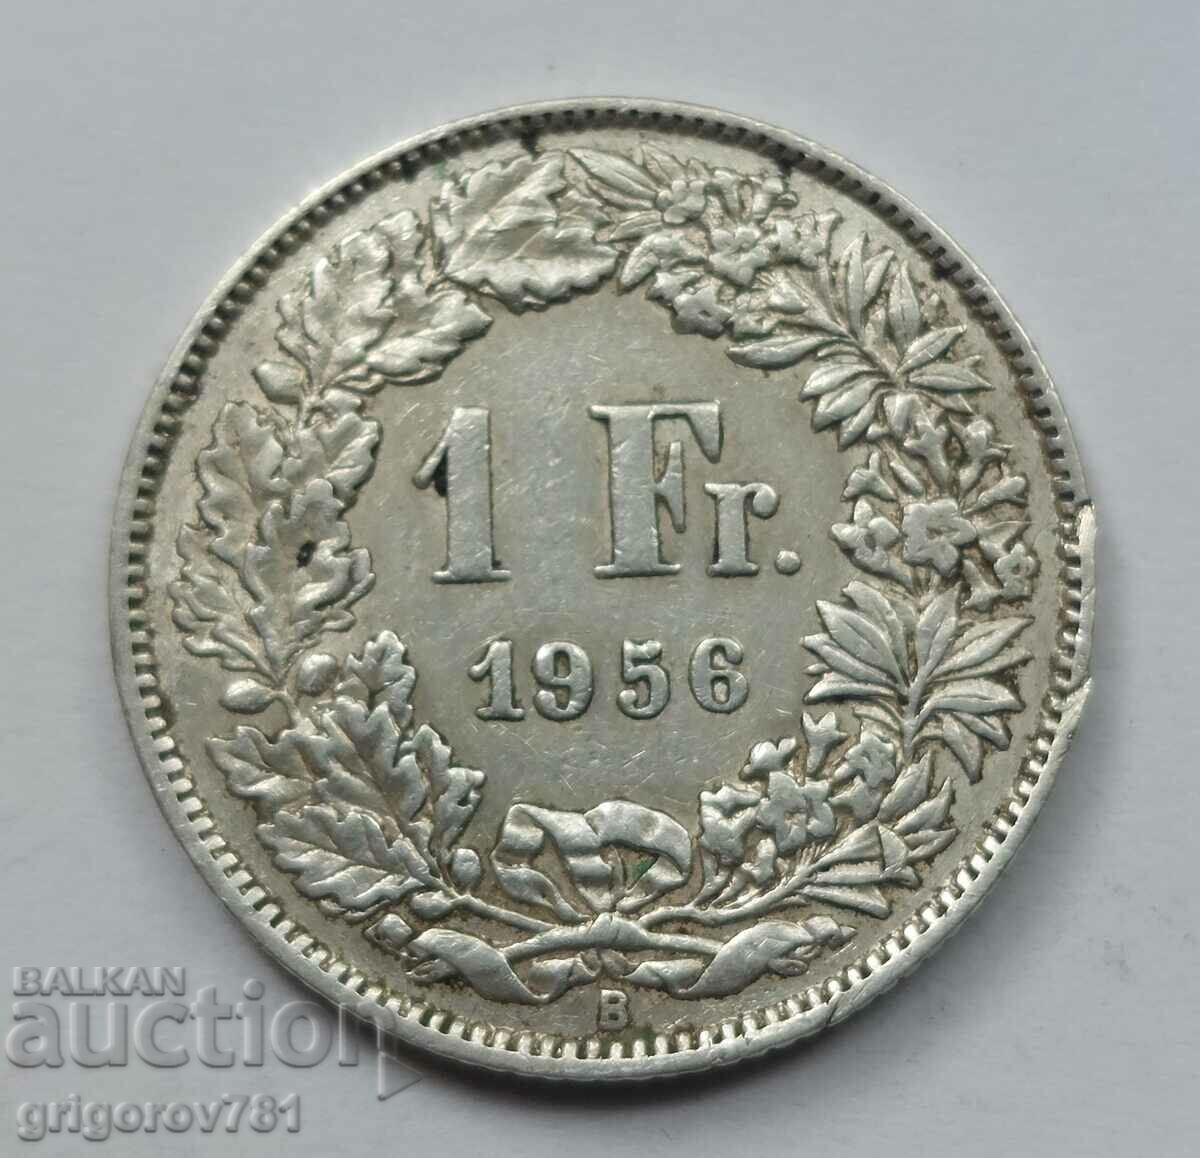 Ασημένιο 1 Φράγκο Ελβετία 1956 B - Ασημένιο νόμισμα #23